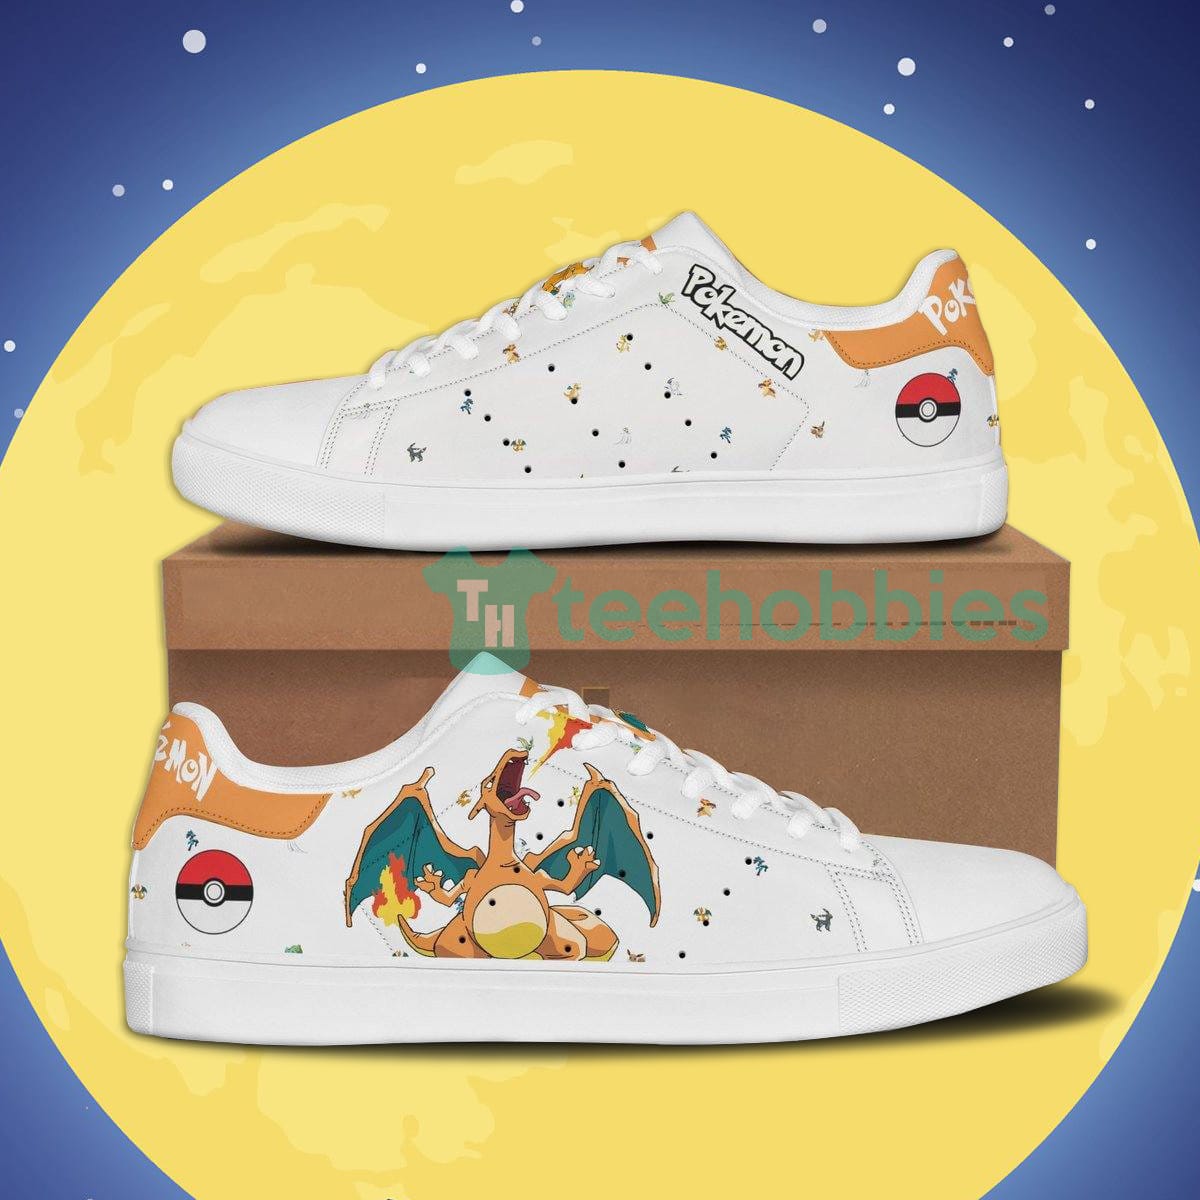 Pokemon Charizard Custom Anime Skate Shoes For Anime Fans